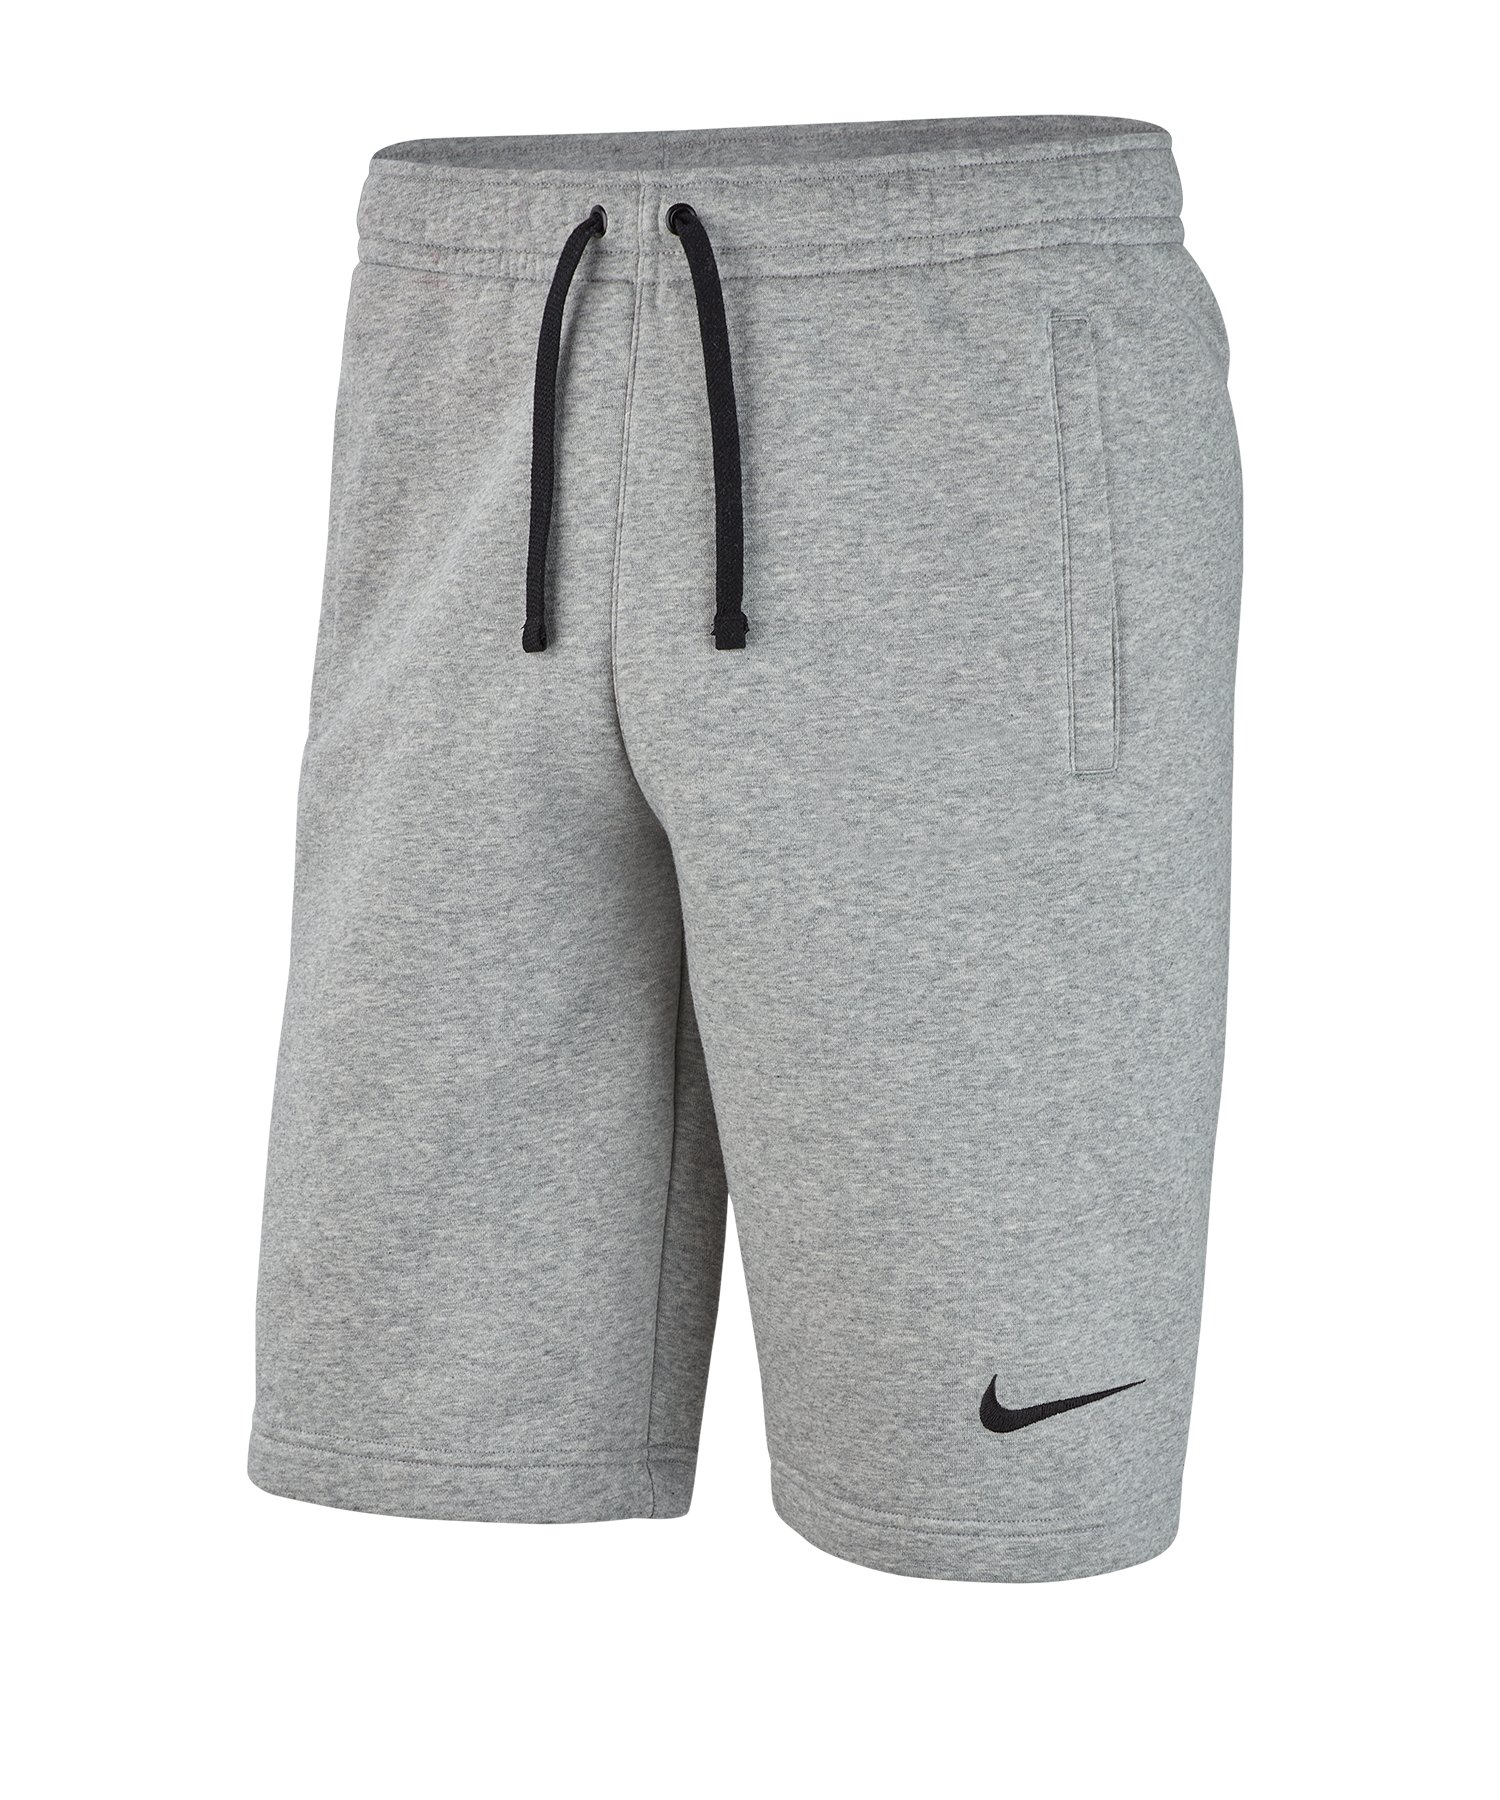 Nike Club 19 Fleece Short Grau F063 - grau